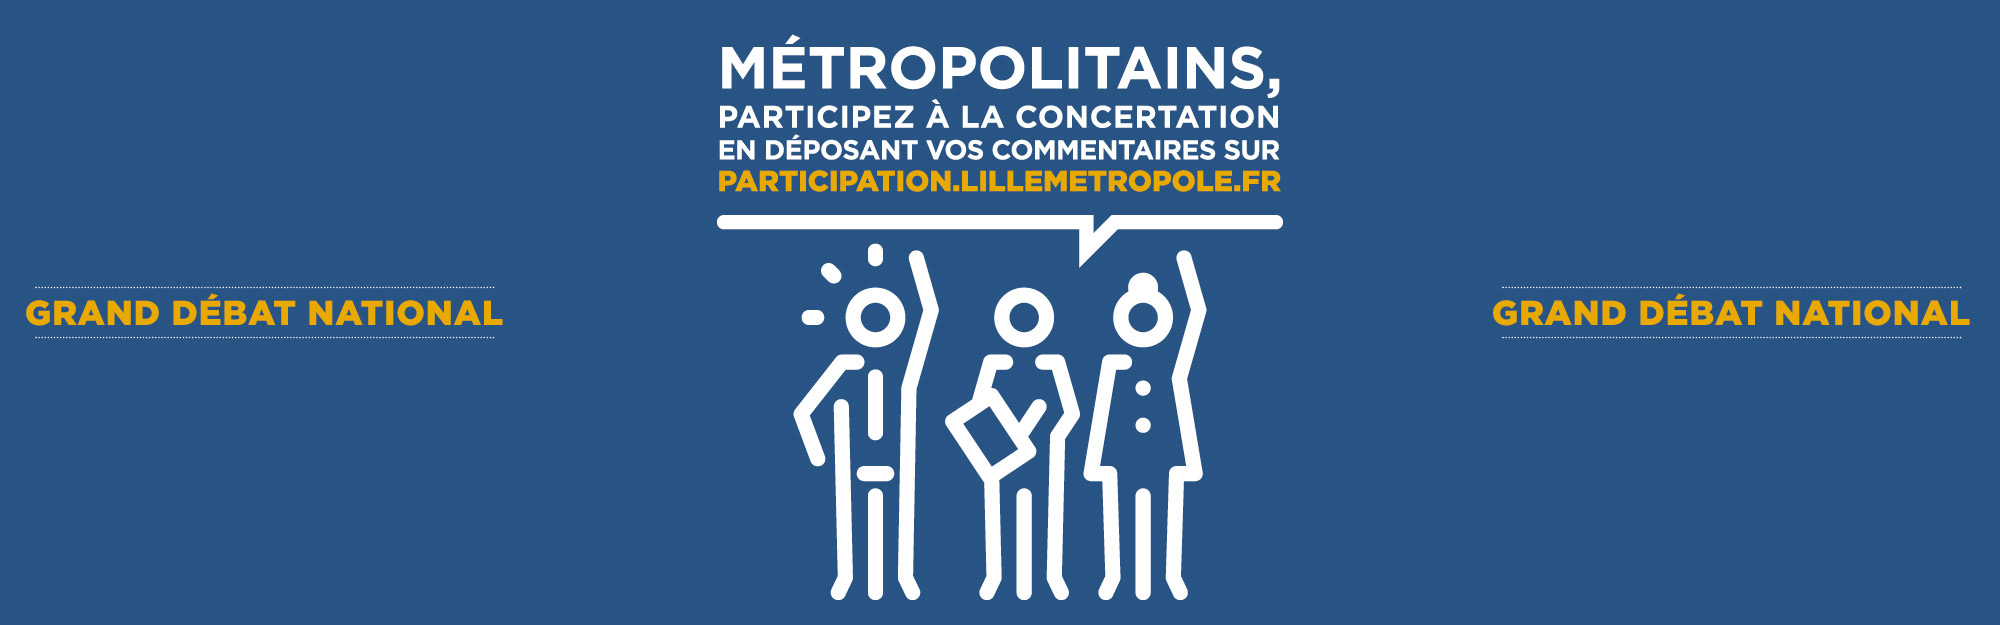 La Métropole Européenne de Lille ouvre sa plateforme de participation citoyenne pour permettre aux habitants des 90 communes de la MEL de s’exprimer dans le cadre du Grand Débat National